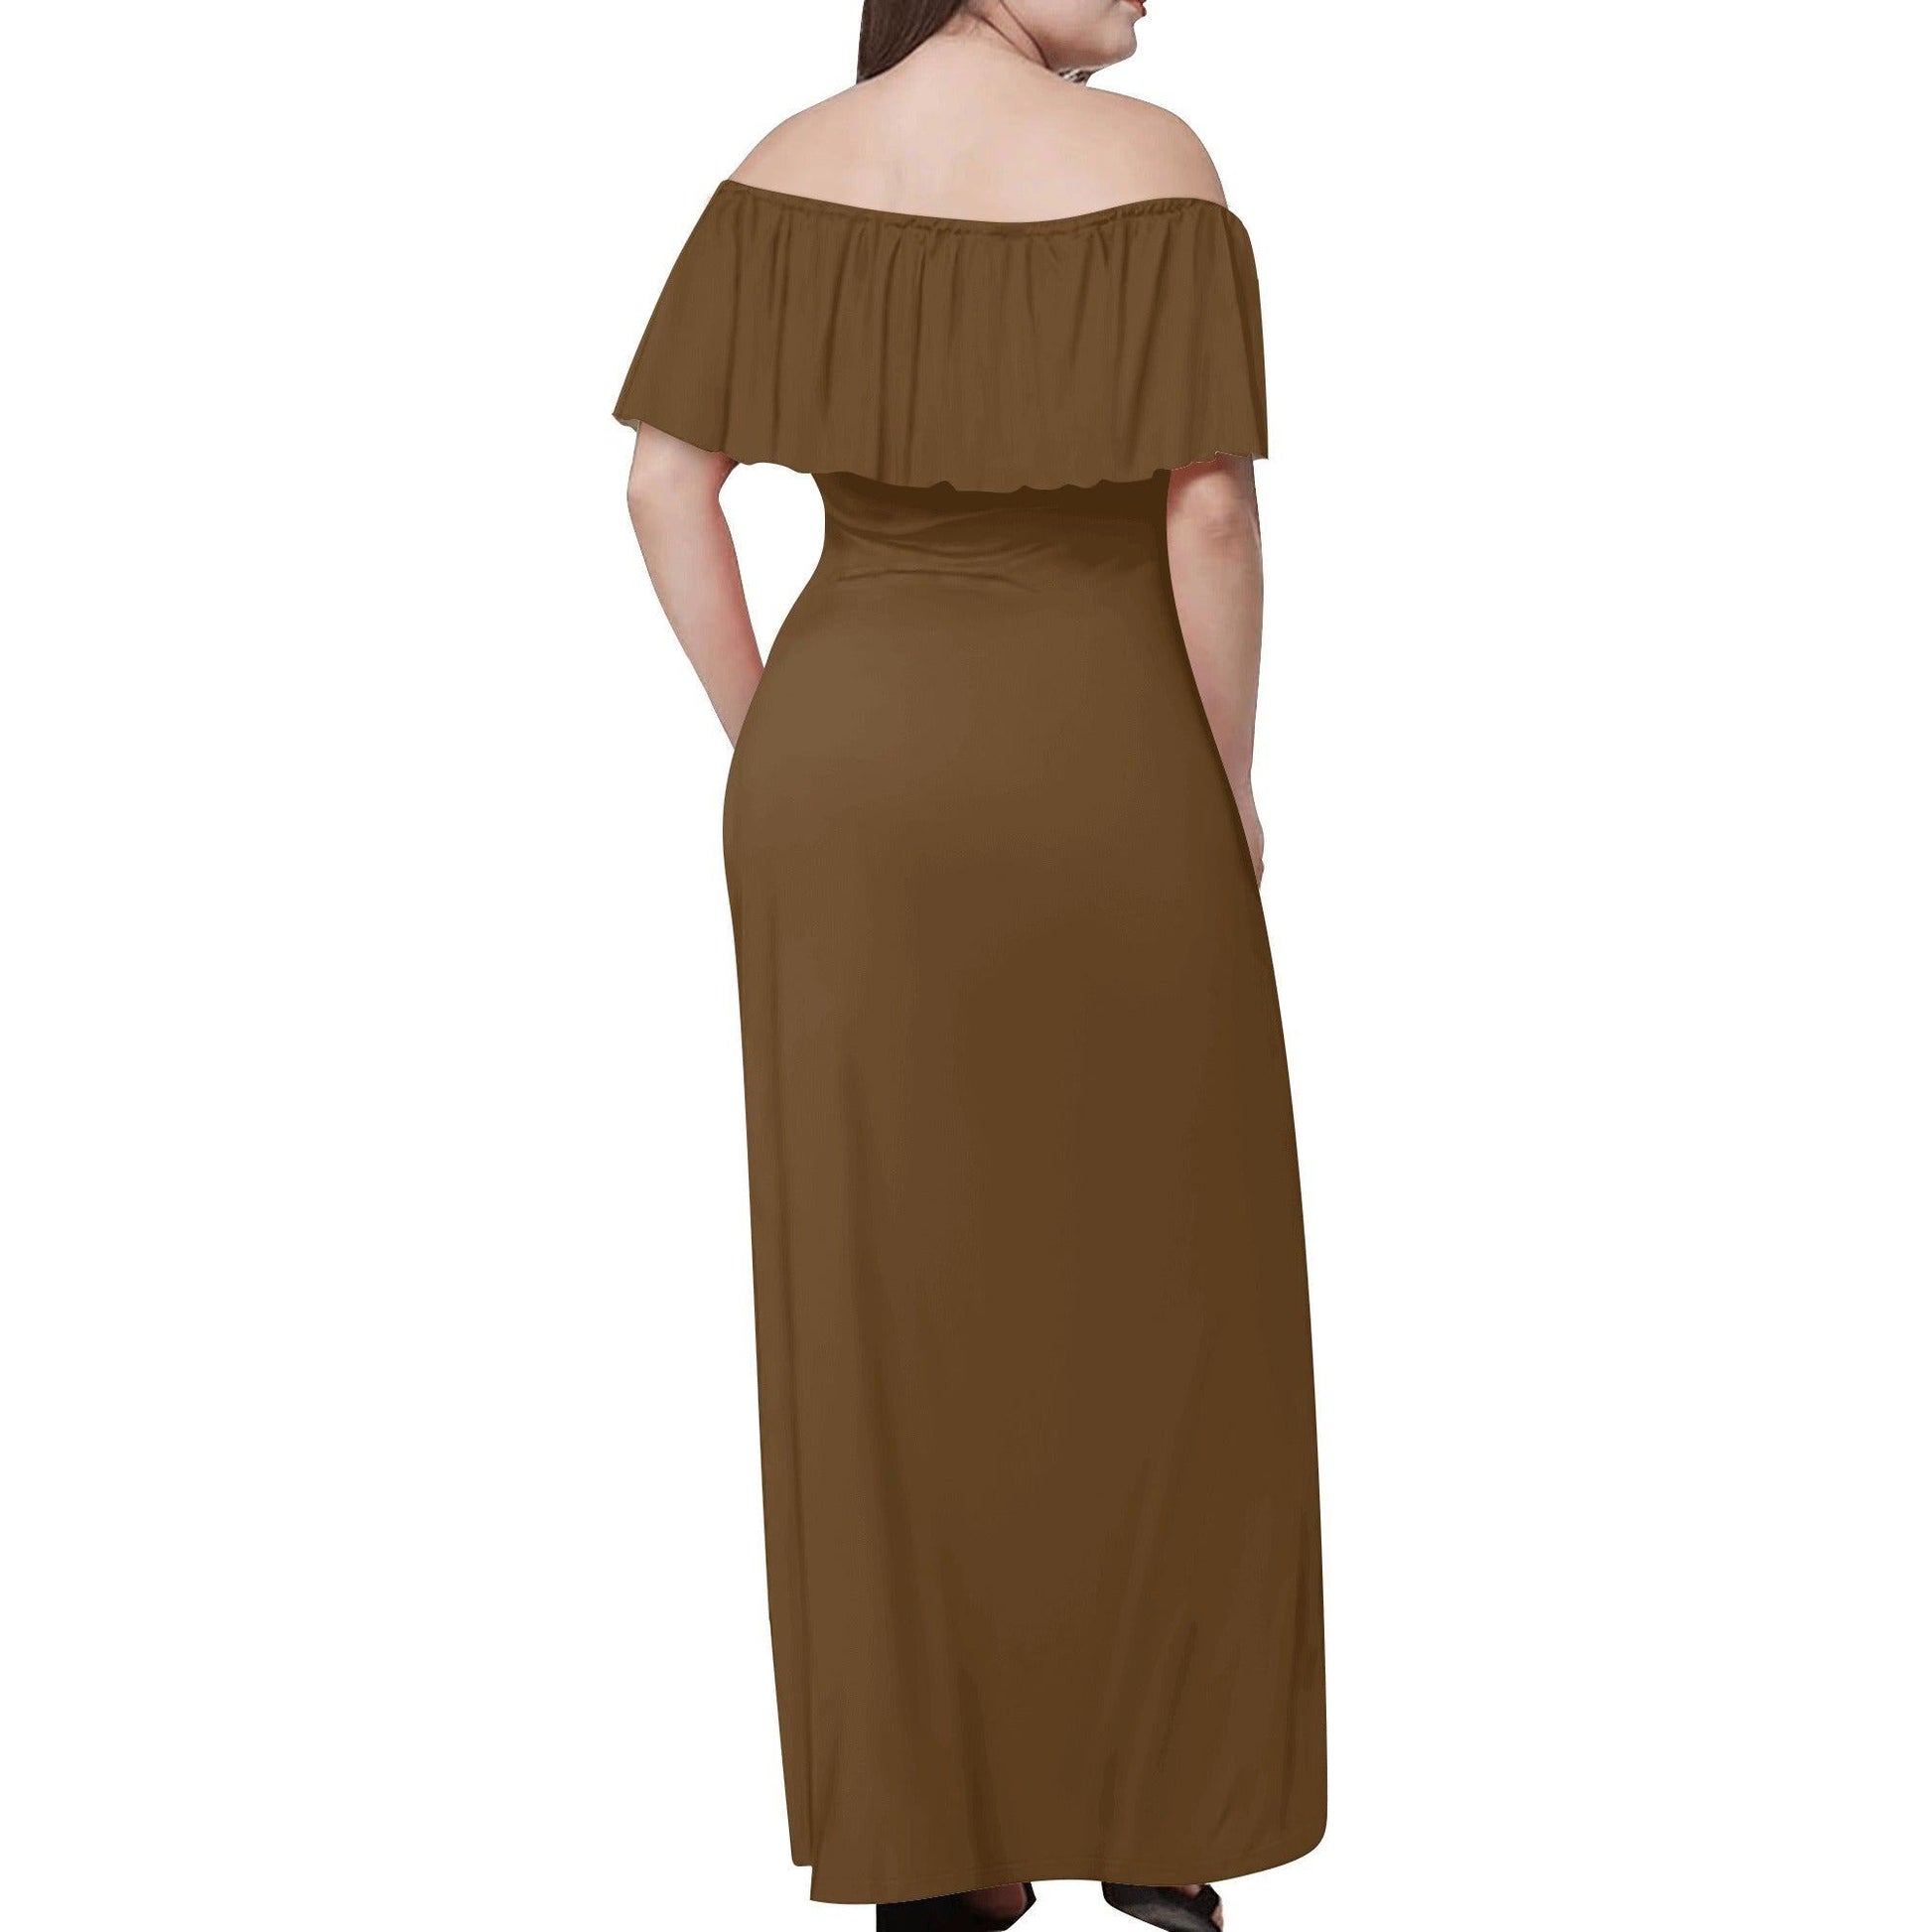 Langes schulterfreies braunes Kleid mit lockerem Oberteil Off-Shoulder-Kleid 73.99 Braun, Kleid, Lang, locker, Oberteil, Schulterfrei JLR Design